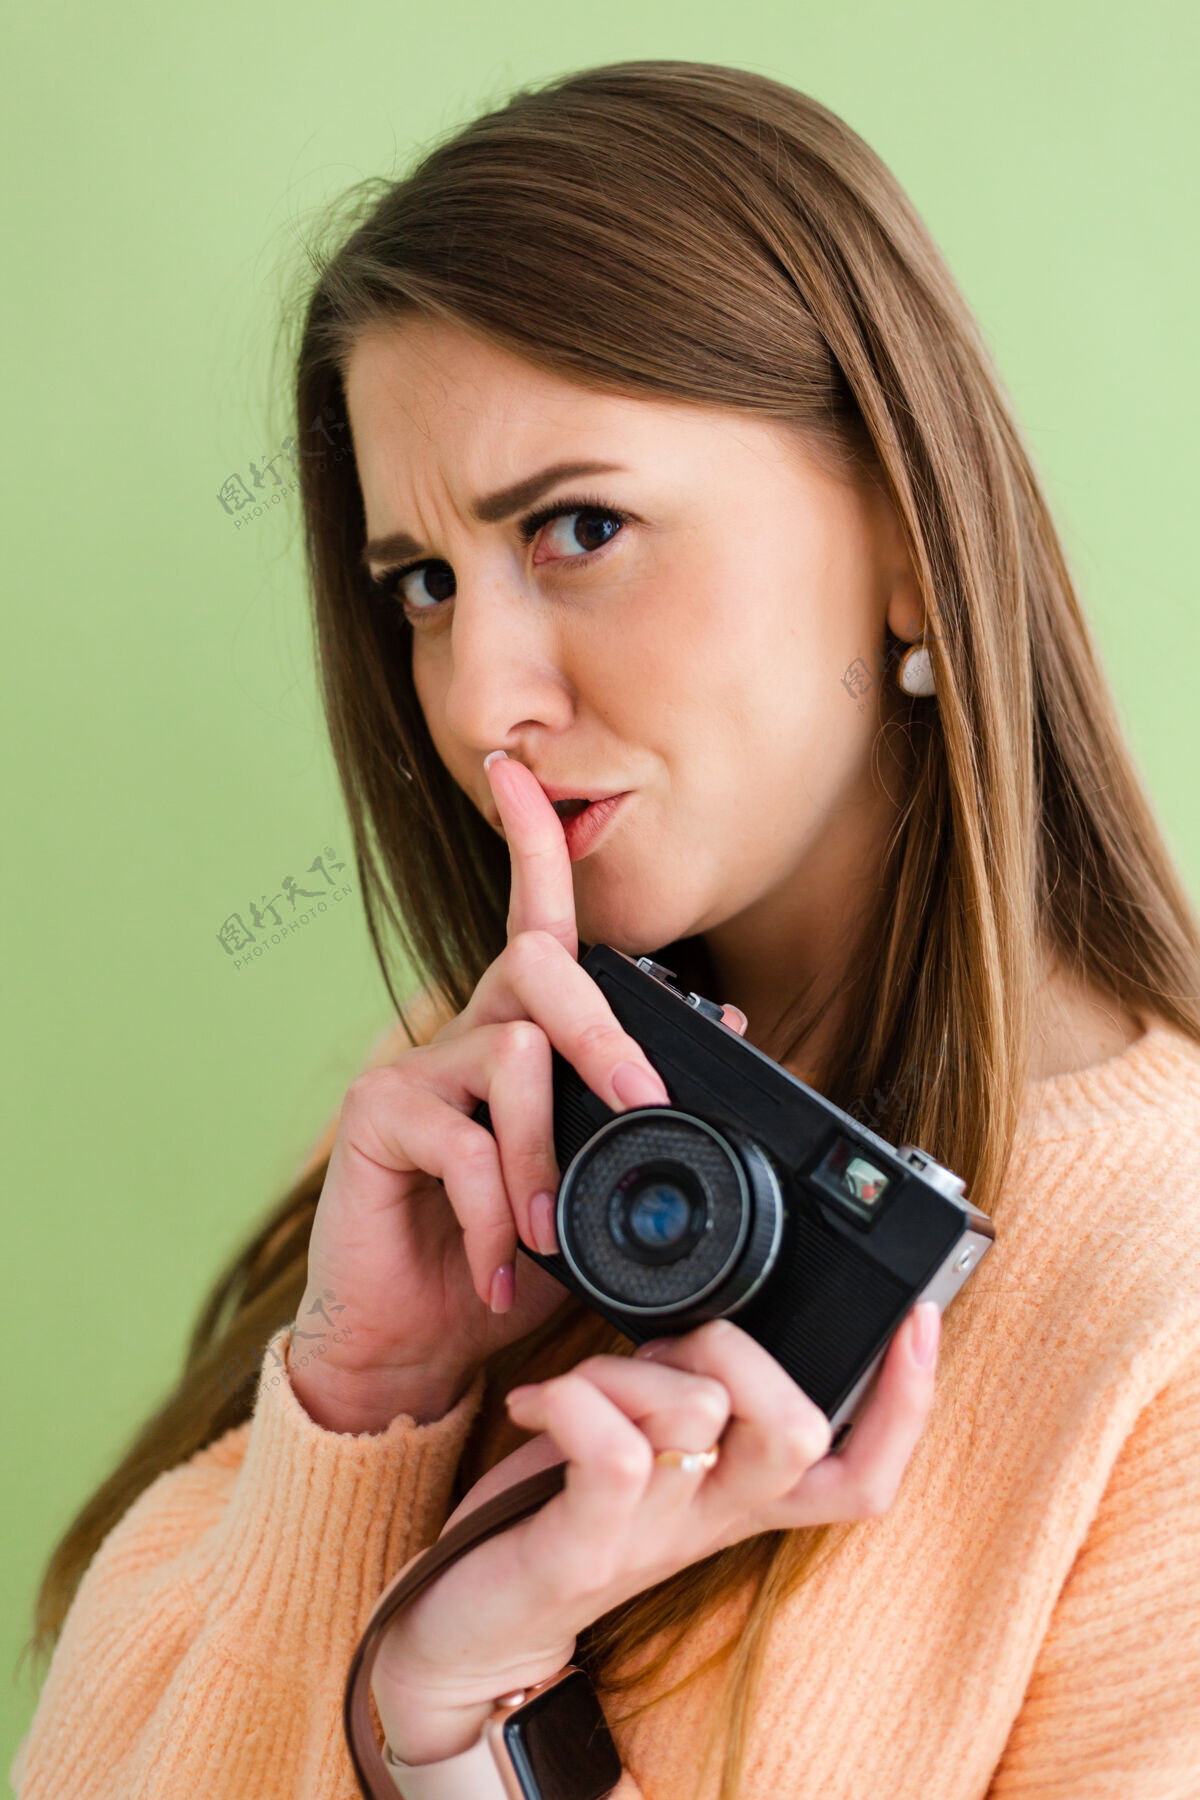 微笑漂亮的欧洲女人手里拿着相机 用手指表示嘘 沉默的手势摄影相机摄影师游客